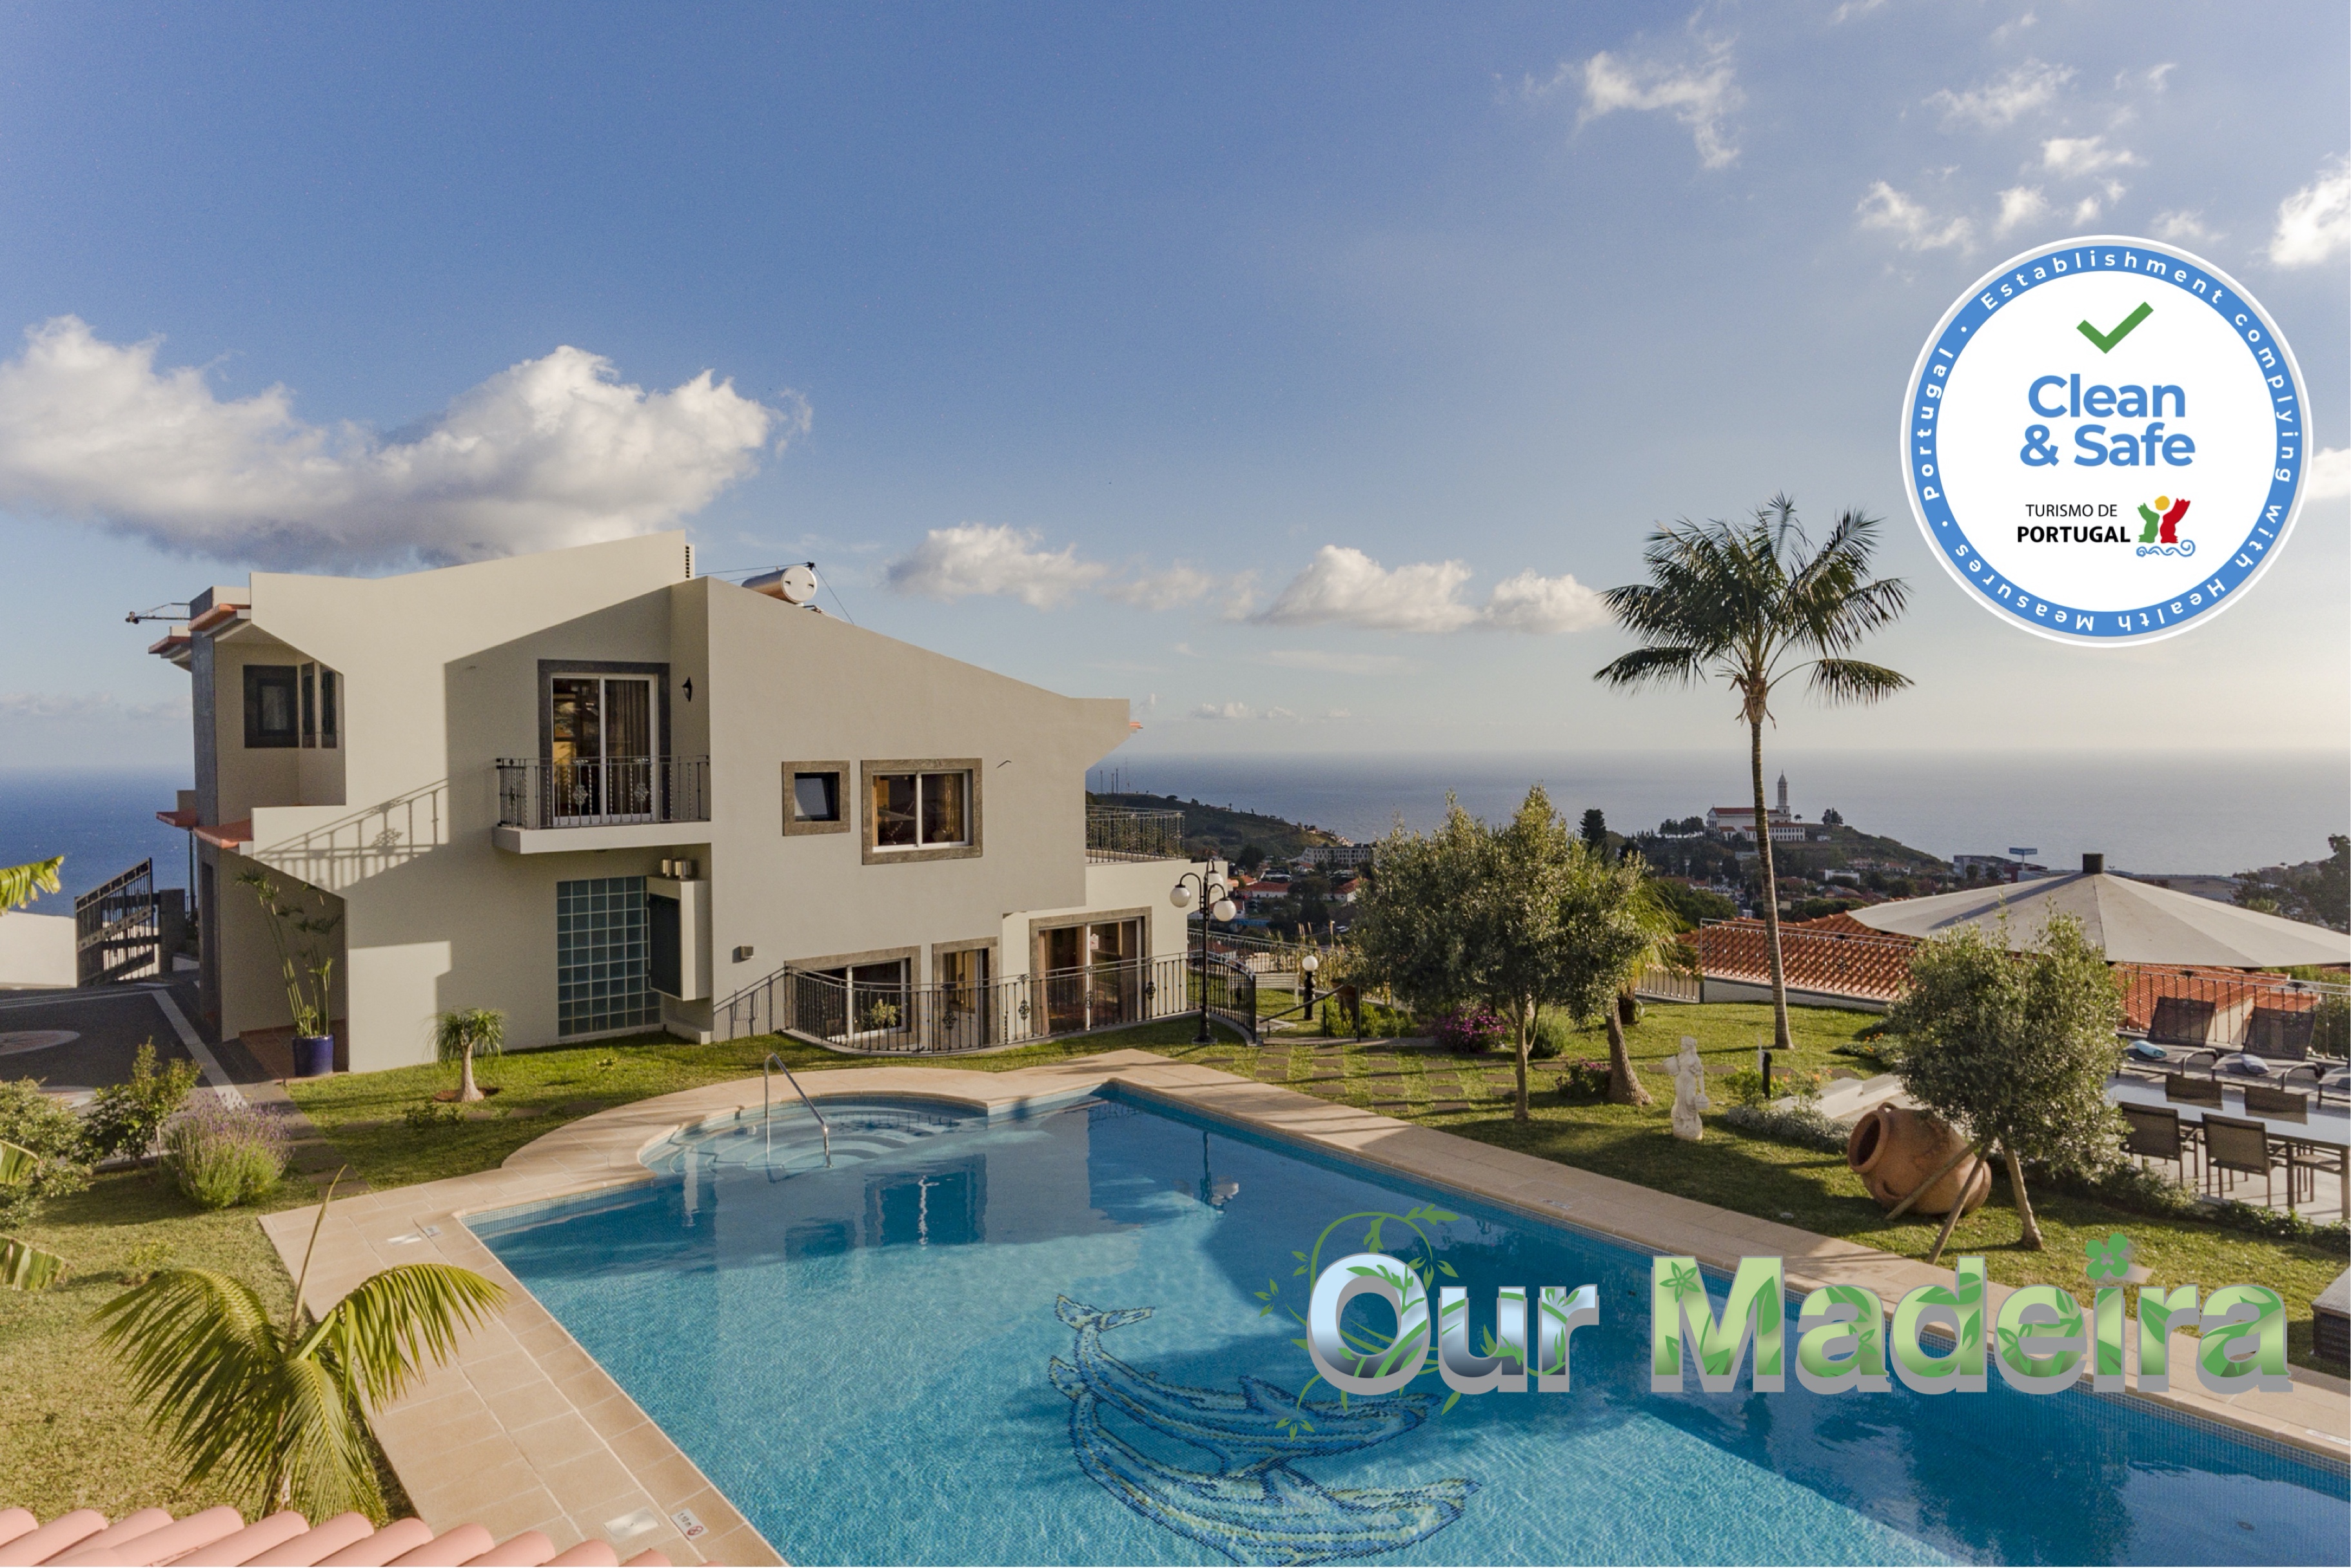 Fabulous villa in Funchal, panoramic sea-view, heated pool | BelAir 0